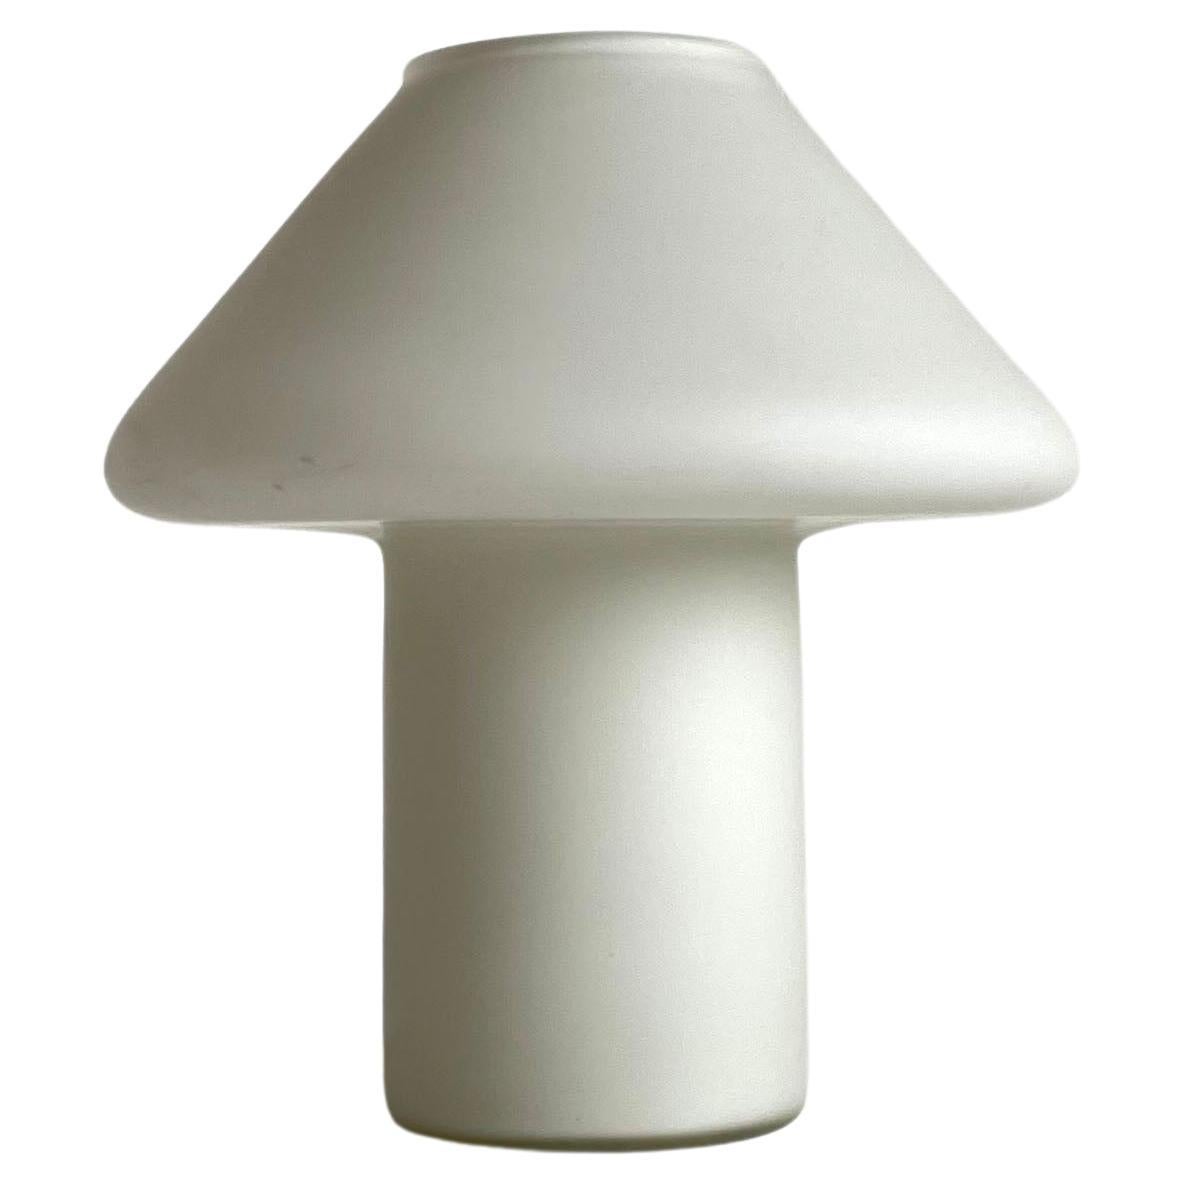 Hala Zeist White Satin Glass Mushroom Table Lamp, Netherlands, 1970s-1980s For Sale